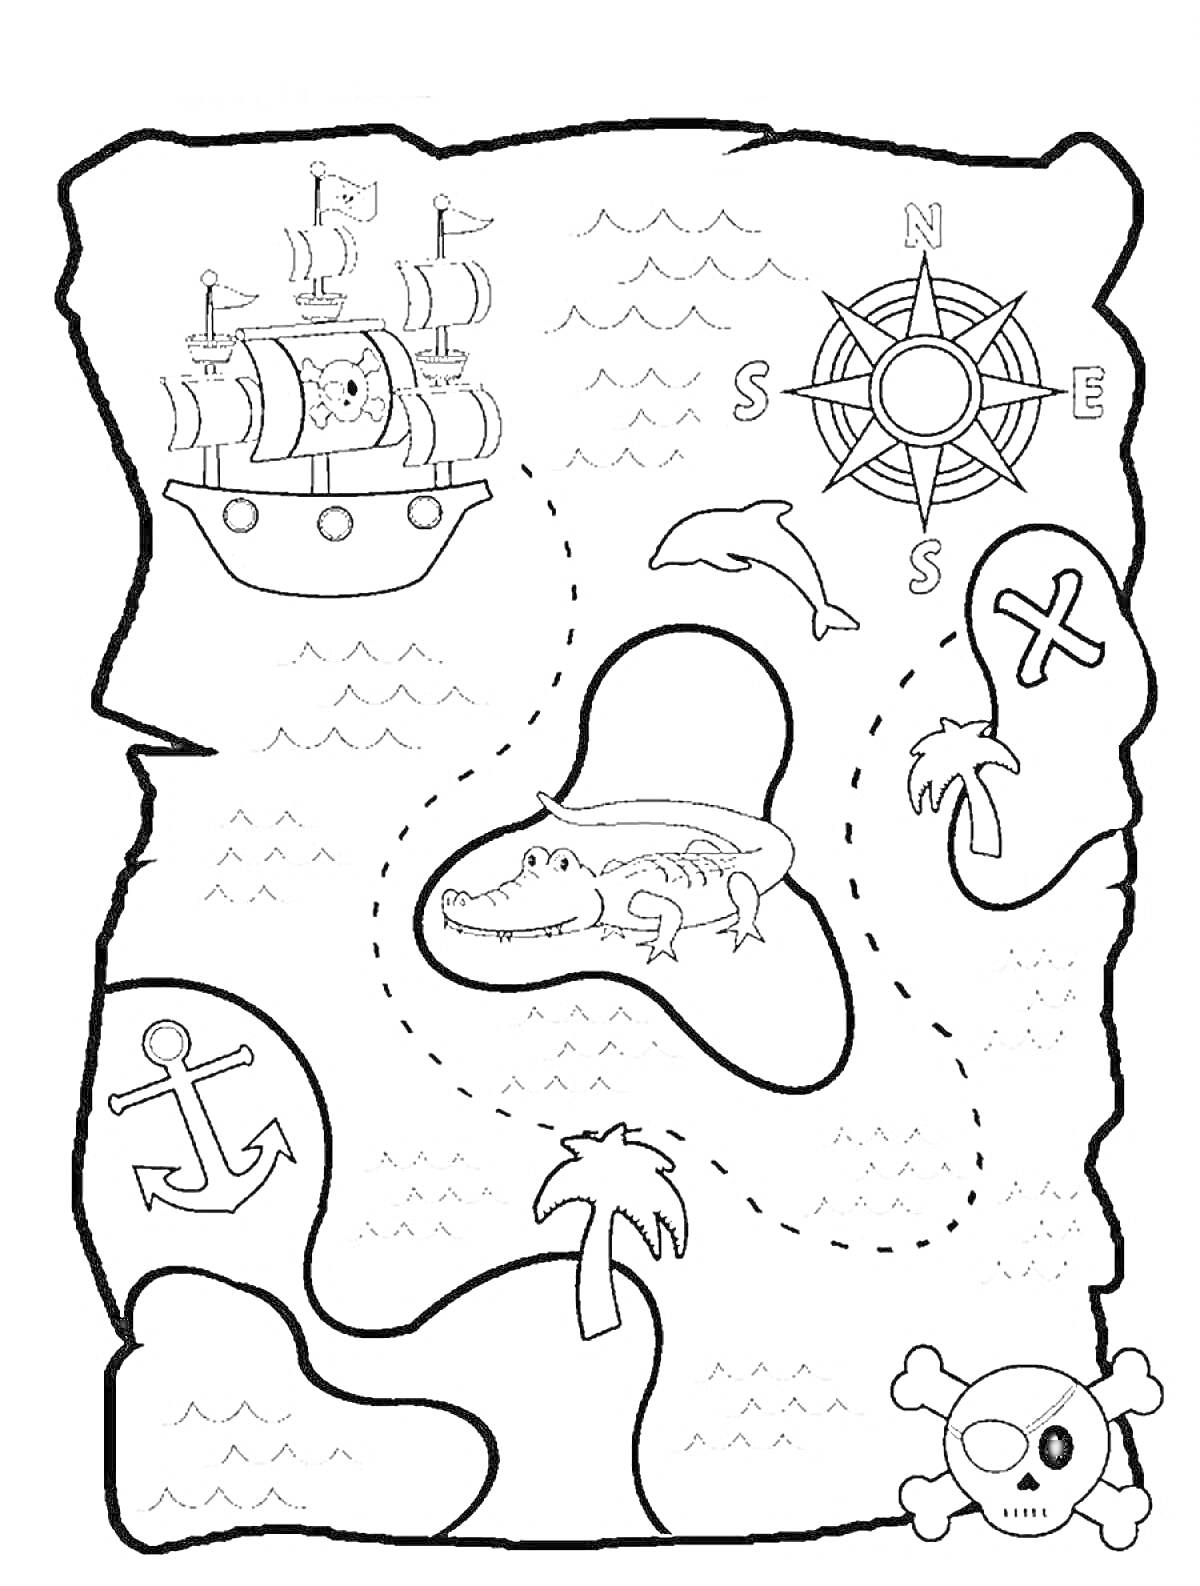 Раскраска Карта сокровищ с кораблём, компасом, аллигатором, дельфином, крестом, якорем, пальмами и черепом с перекрещенными костями